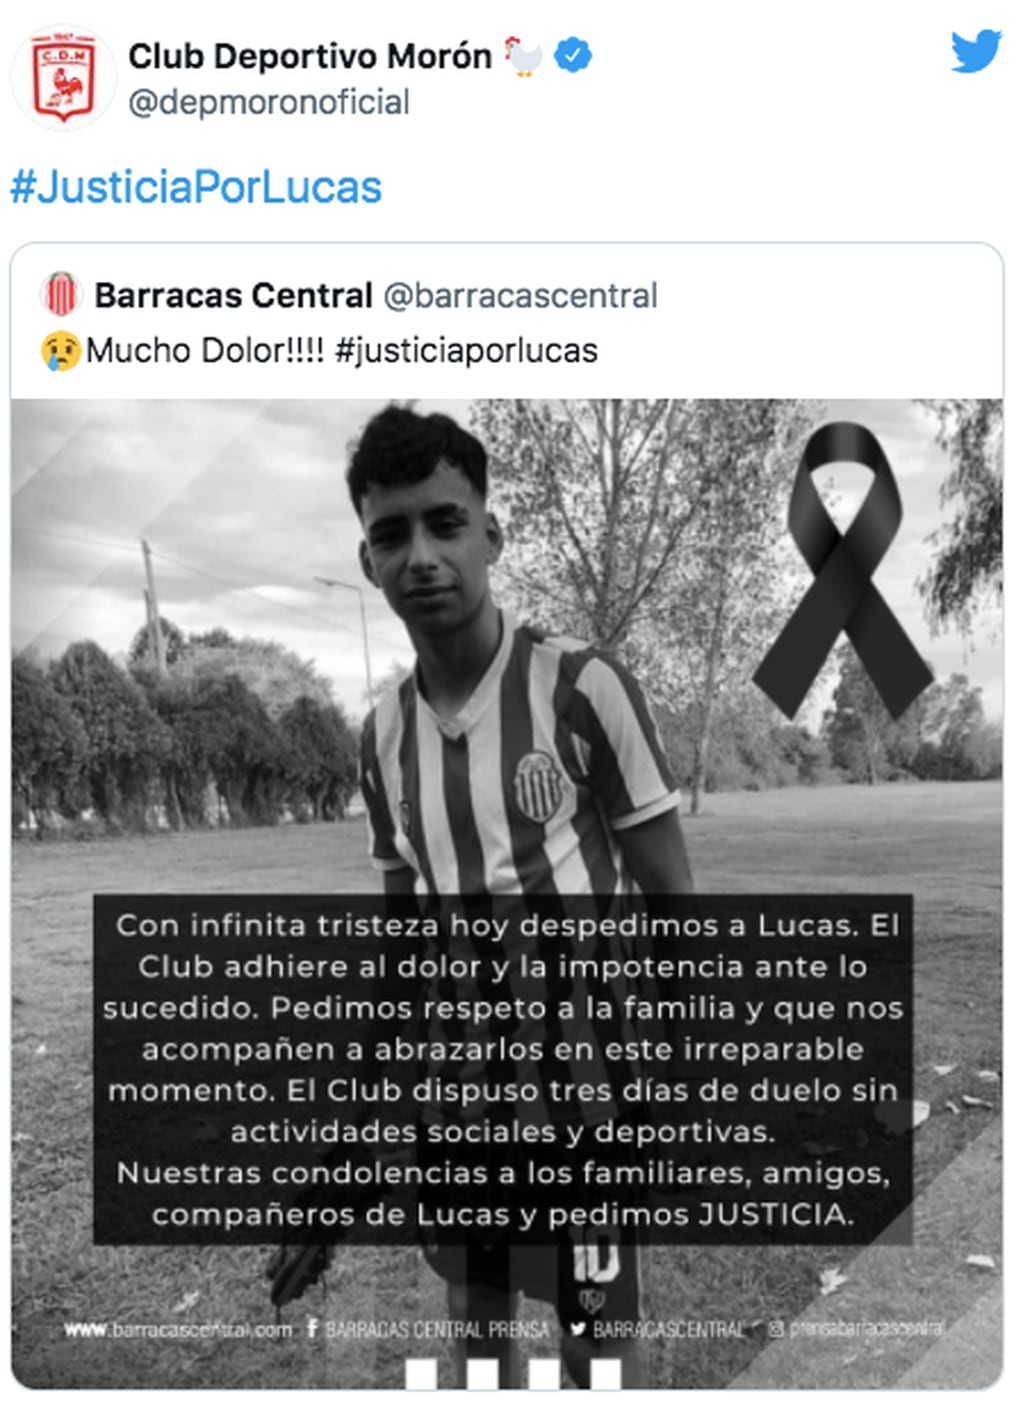 El pedido de Justicia por Lucas de los clubes del fútbol argentino.